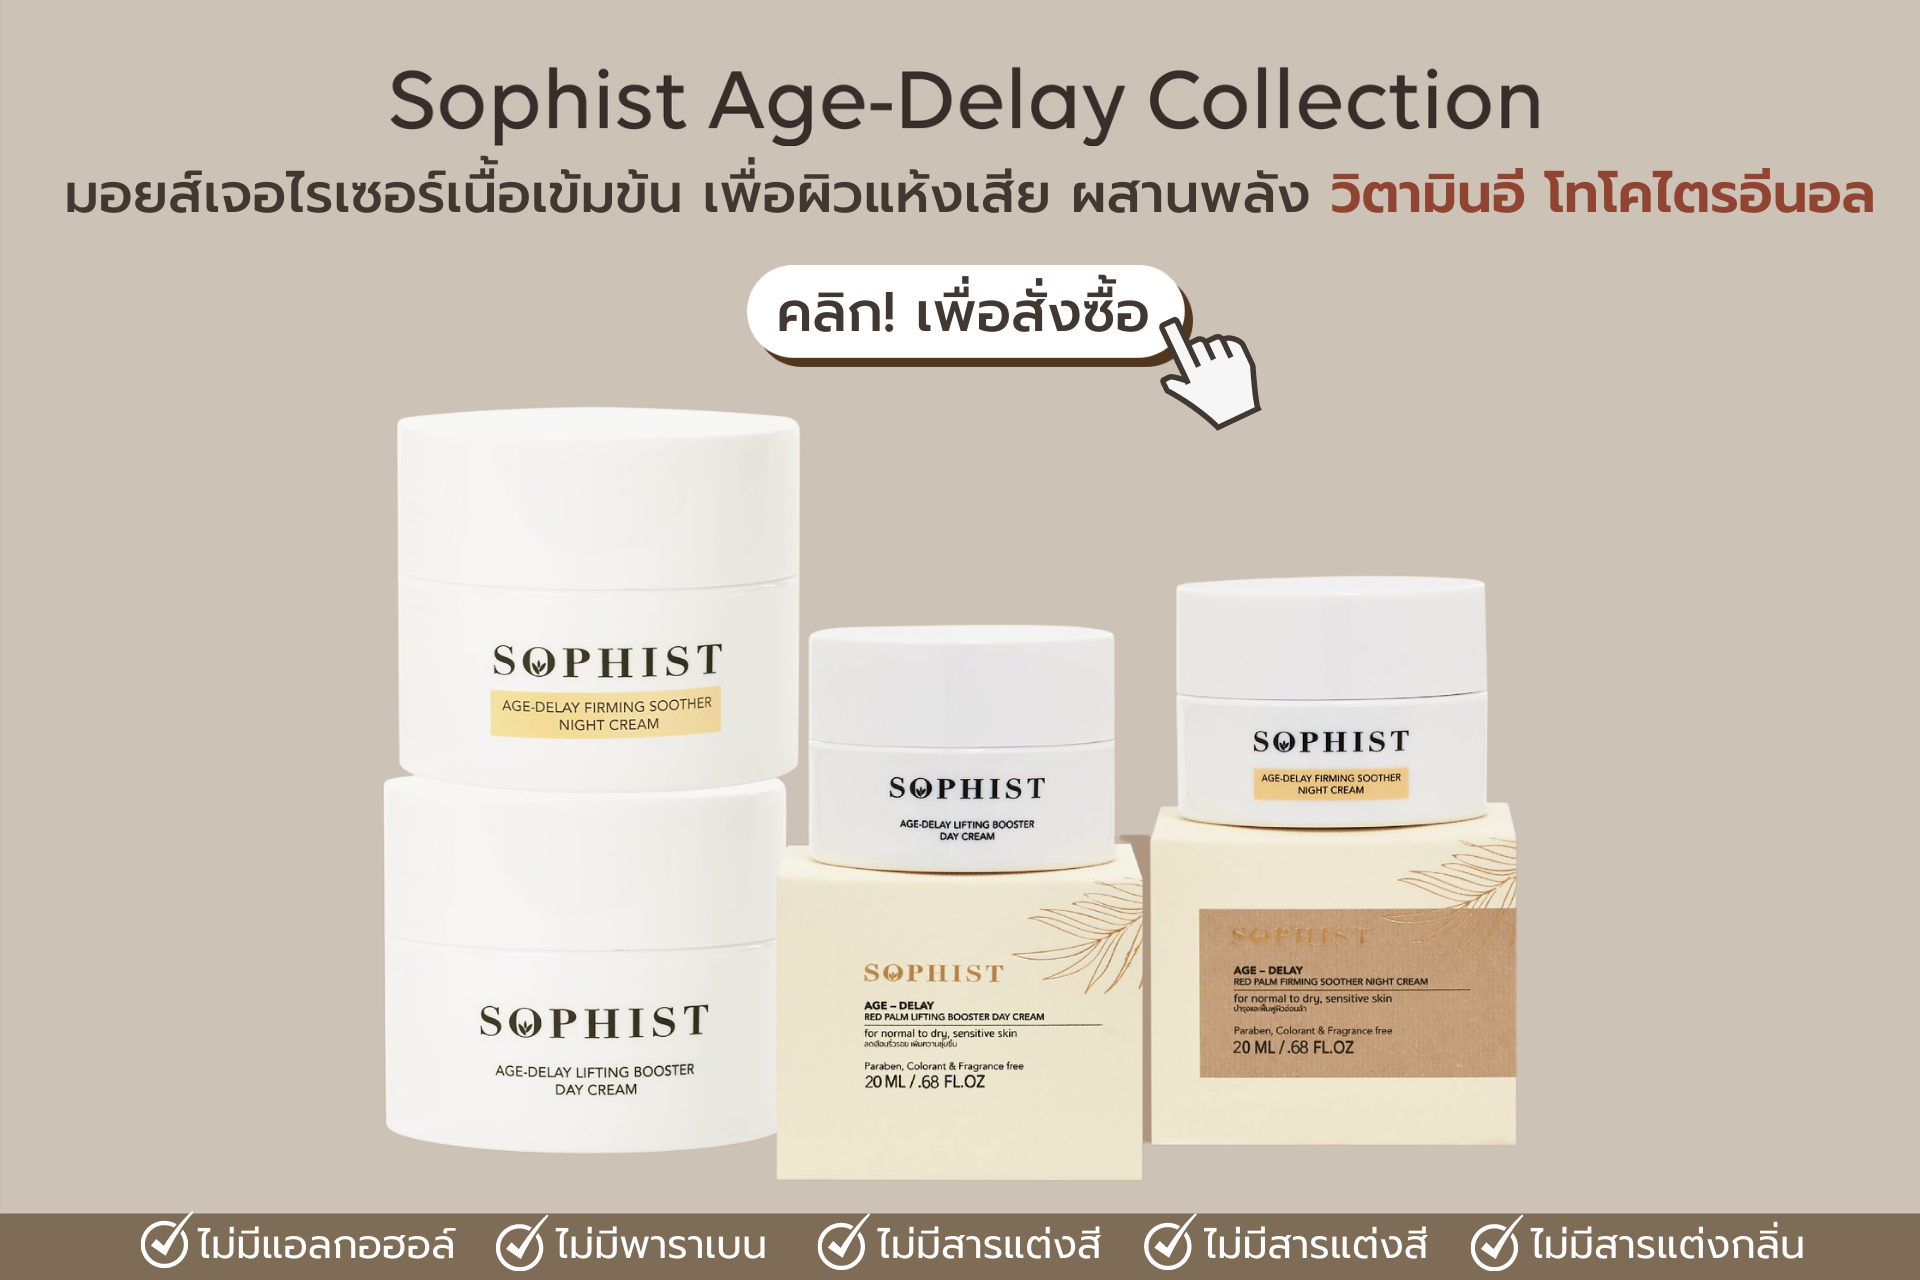 เราขอแนะนำ Sophist Age-Delay Collection Day Cream & Night Cream ครีมเพื่อผิวแห้งเสีย ลอกเป็นขุย